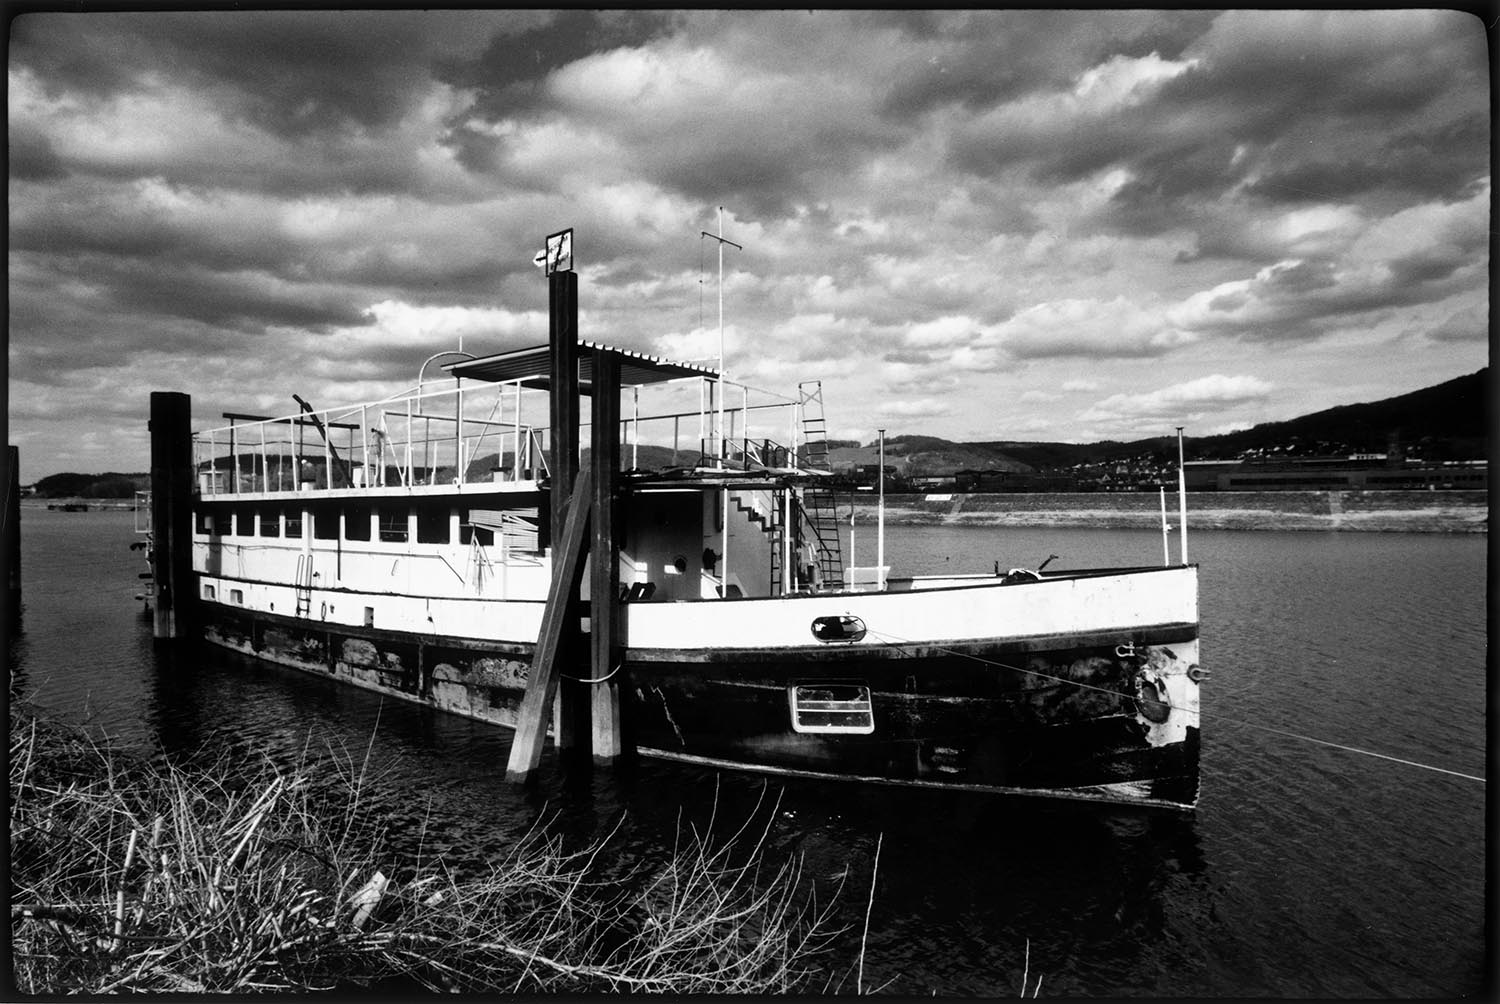 Wohn- und Werkstattschiff, etwas abgetakelt - Rheinromantik, eine Fotoserie von Dan Hummel, Schwarzweißfotos